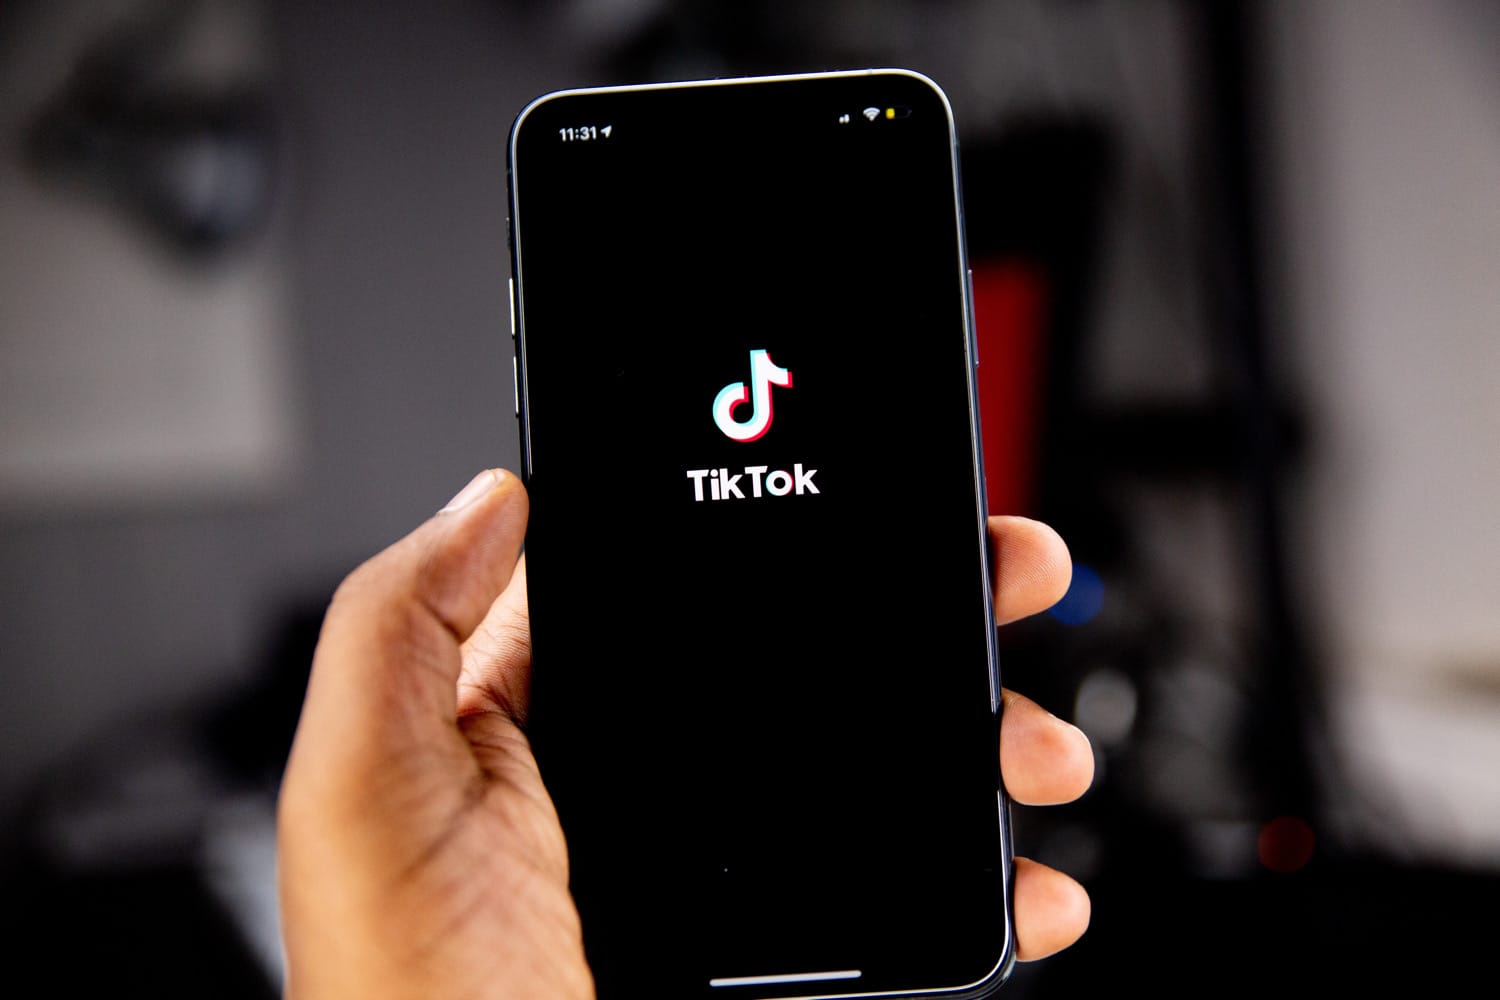 Ein iPhone mit angezeigtem TikTok-Logo